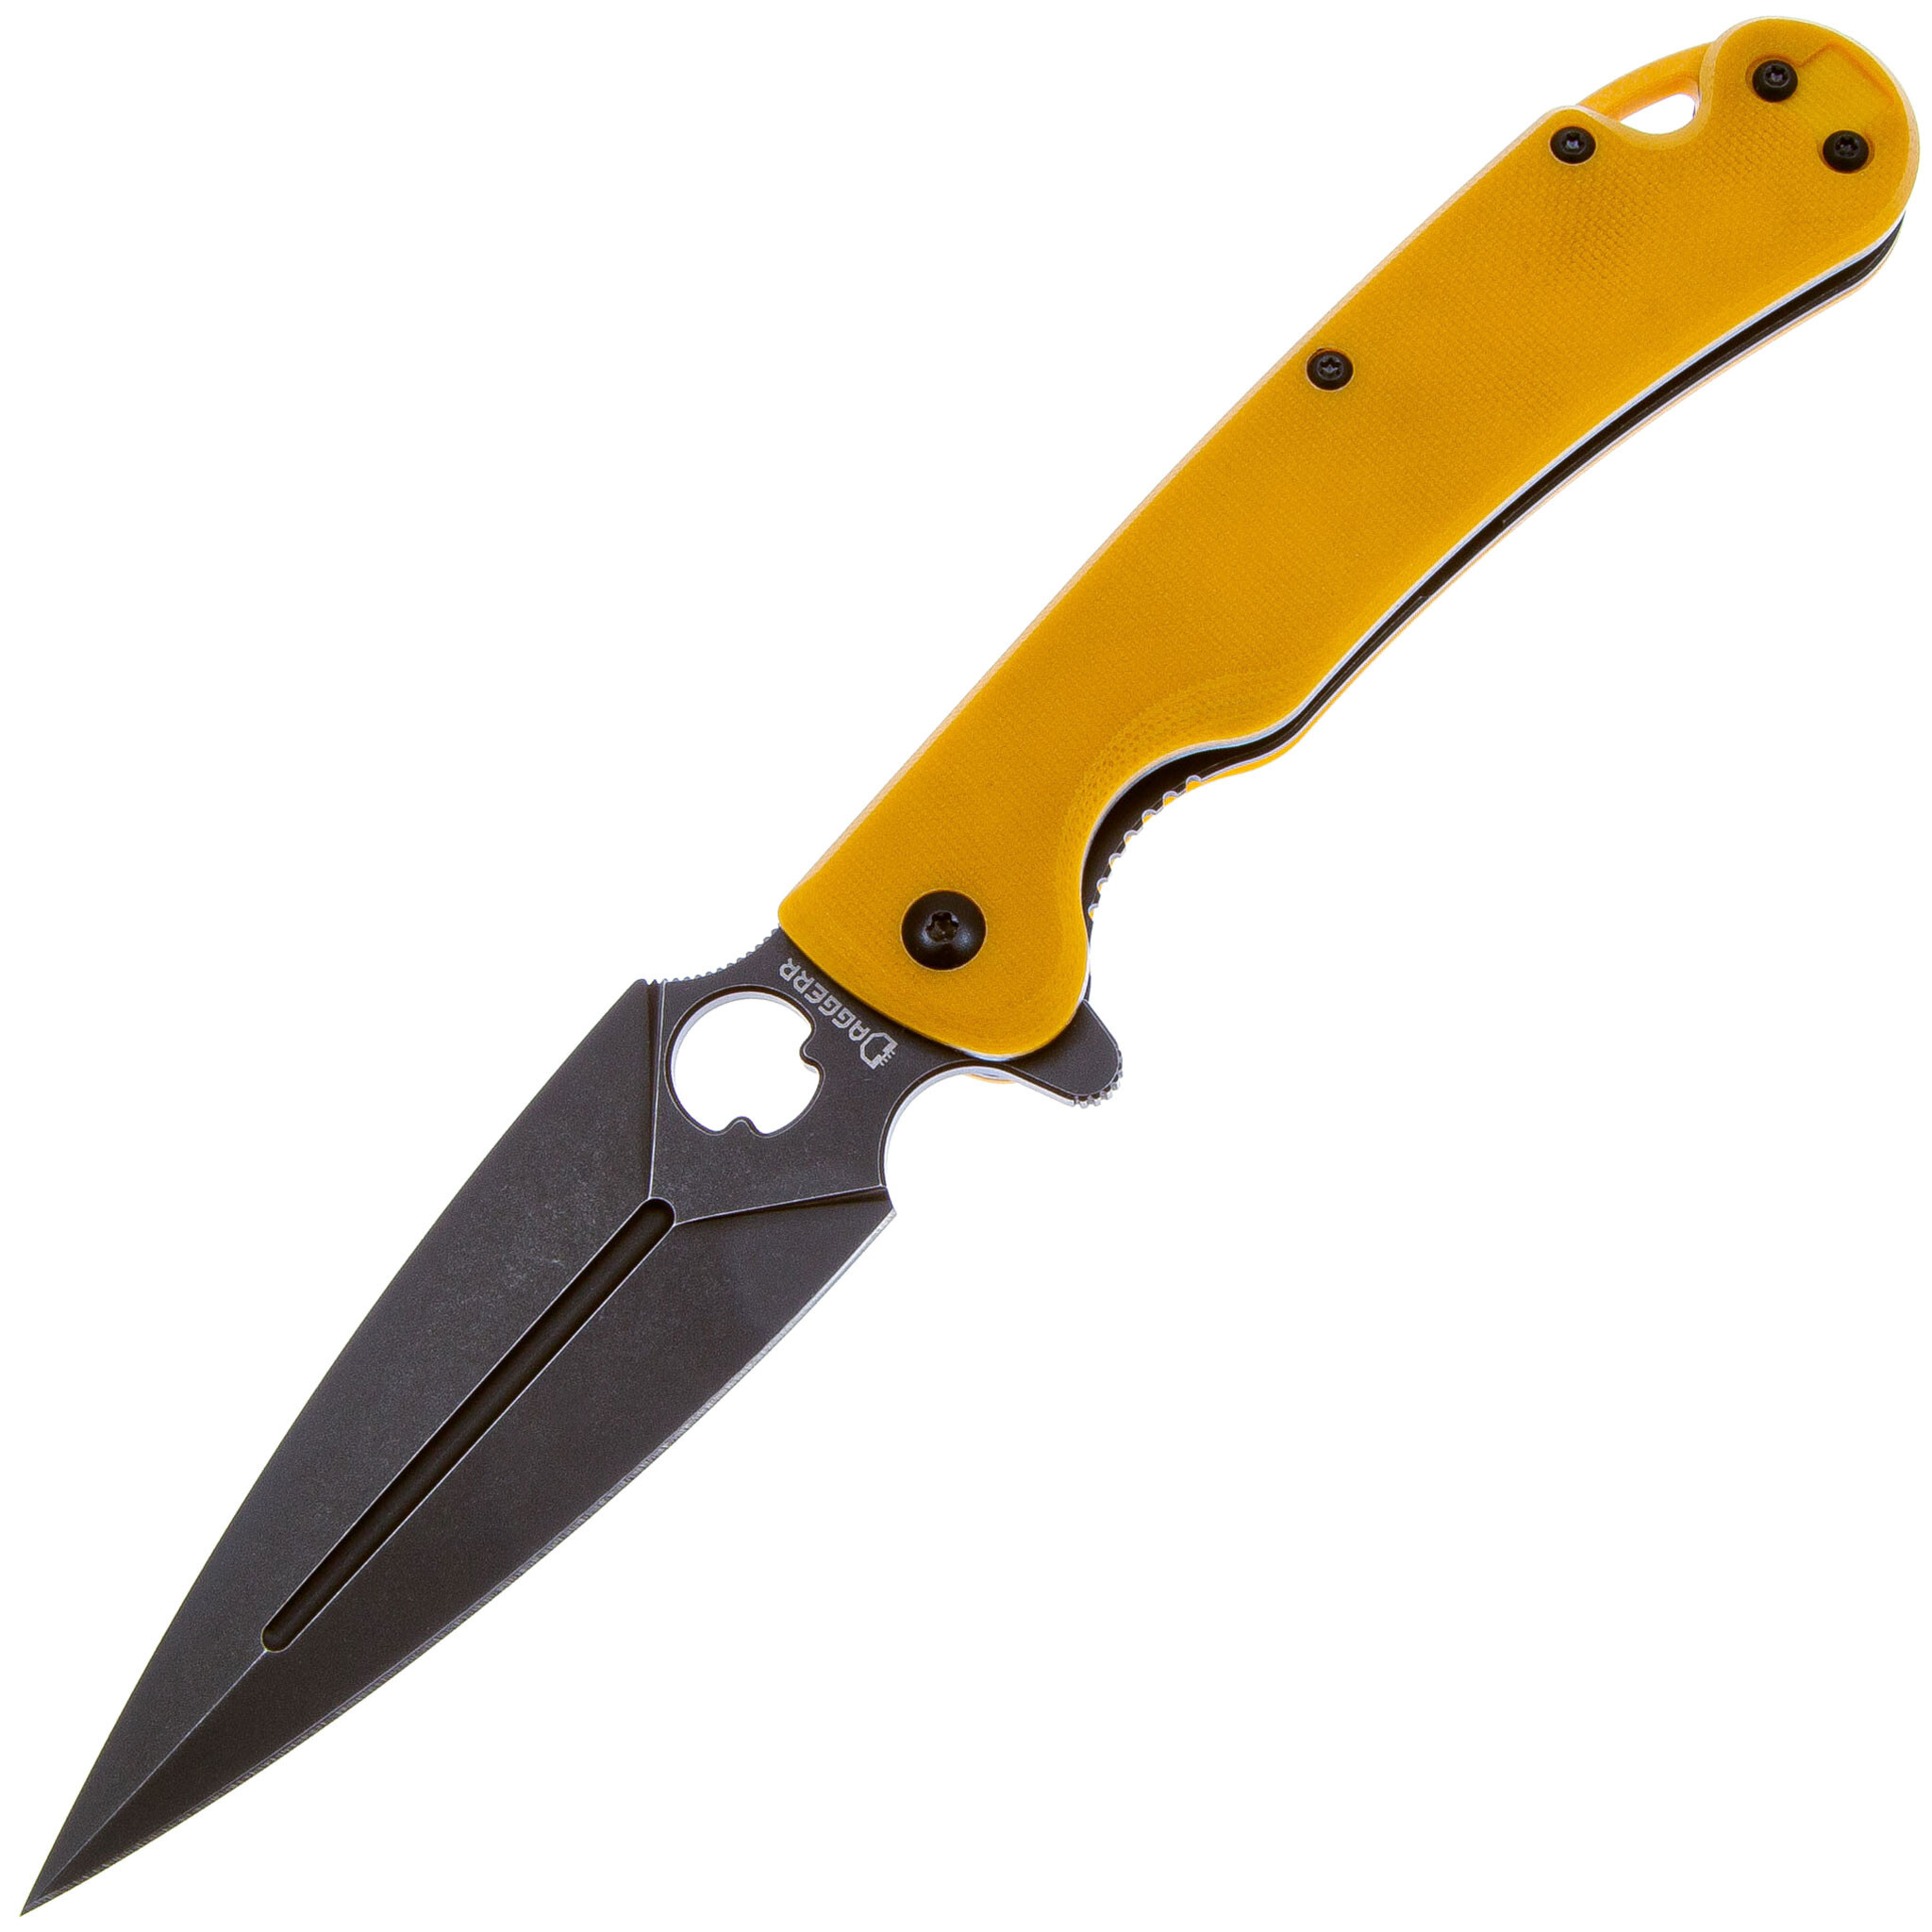 Складной нож Daggerr Arrow Skorpion MC Edition, сталь D2 складной нож daggerr pelican limited edition